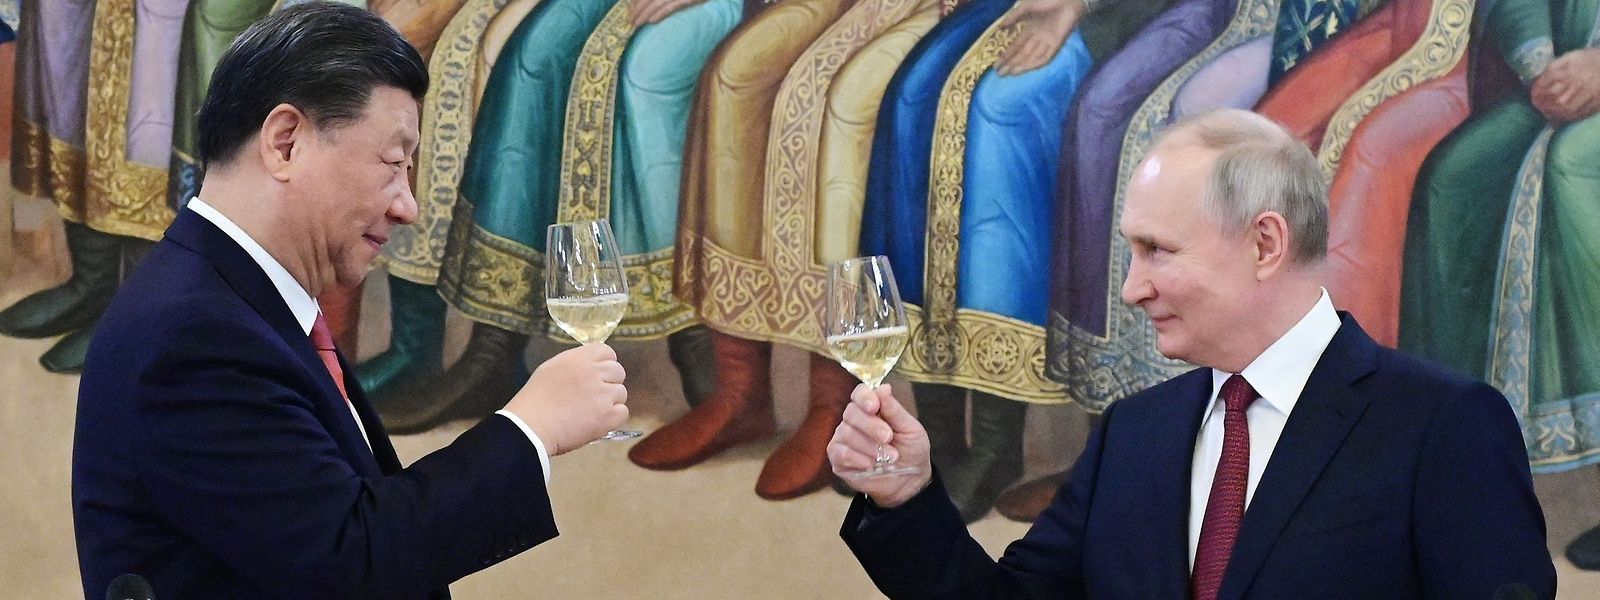 Der russische Präsident Wladimir Putin und der chinesische Präsident Xi Jinping stoßen bei einem Empfang nach ihren Gesprächen im Kreml an.